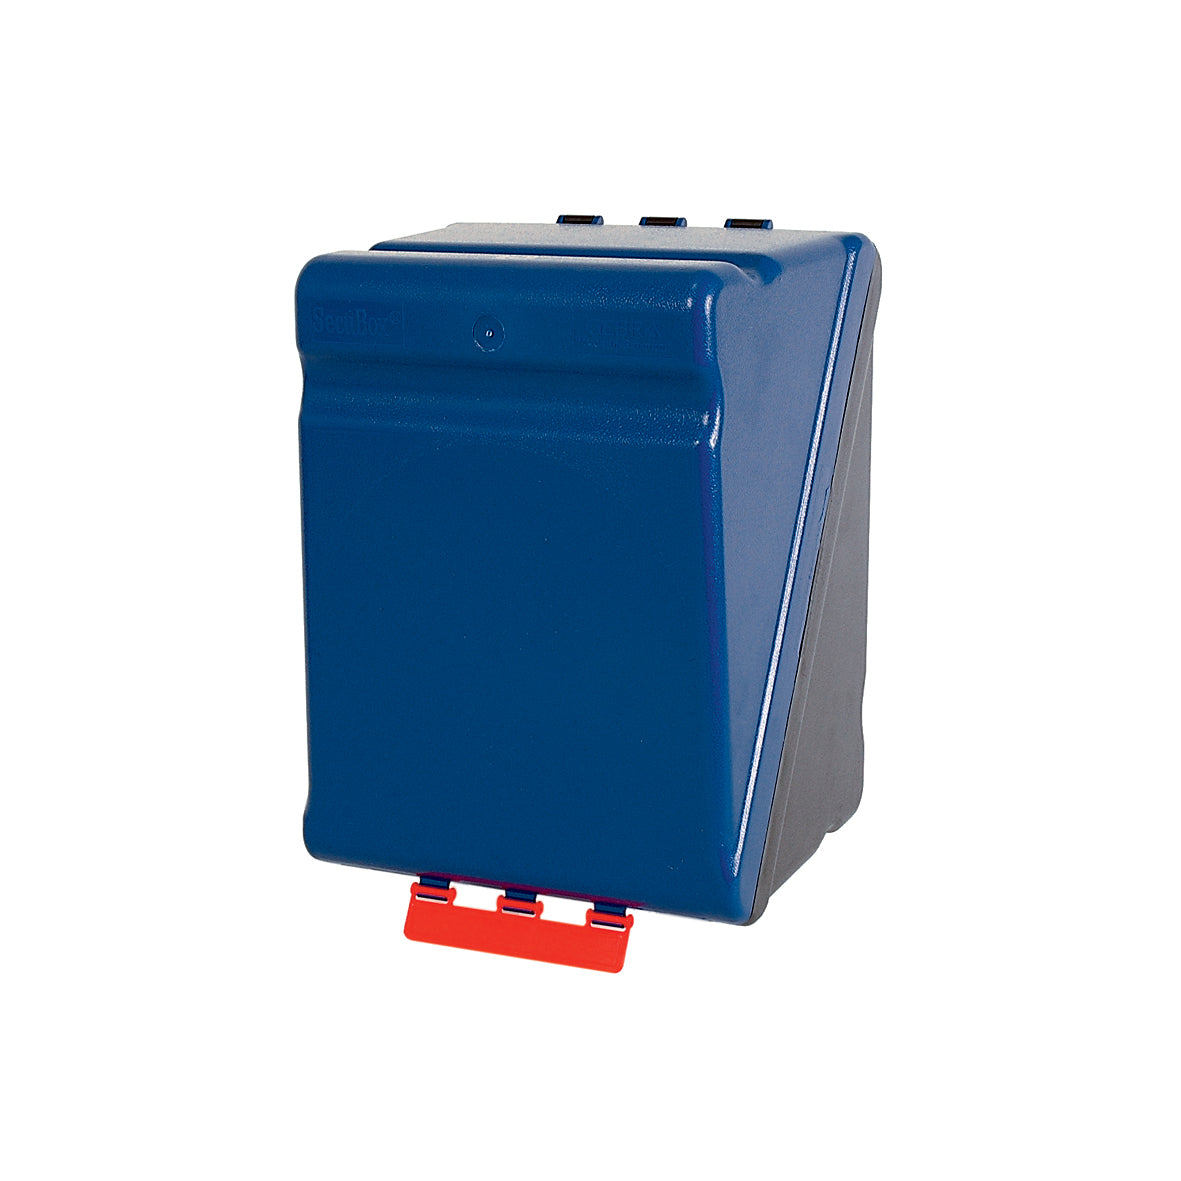 Schutzmittelboxen Maxi, blau, Grösse 236 x 315 x 200 mm, ohne Kleber (ø 200 mm)